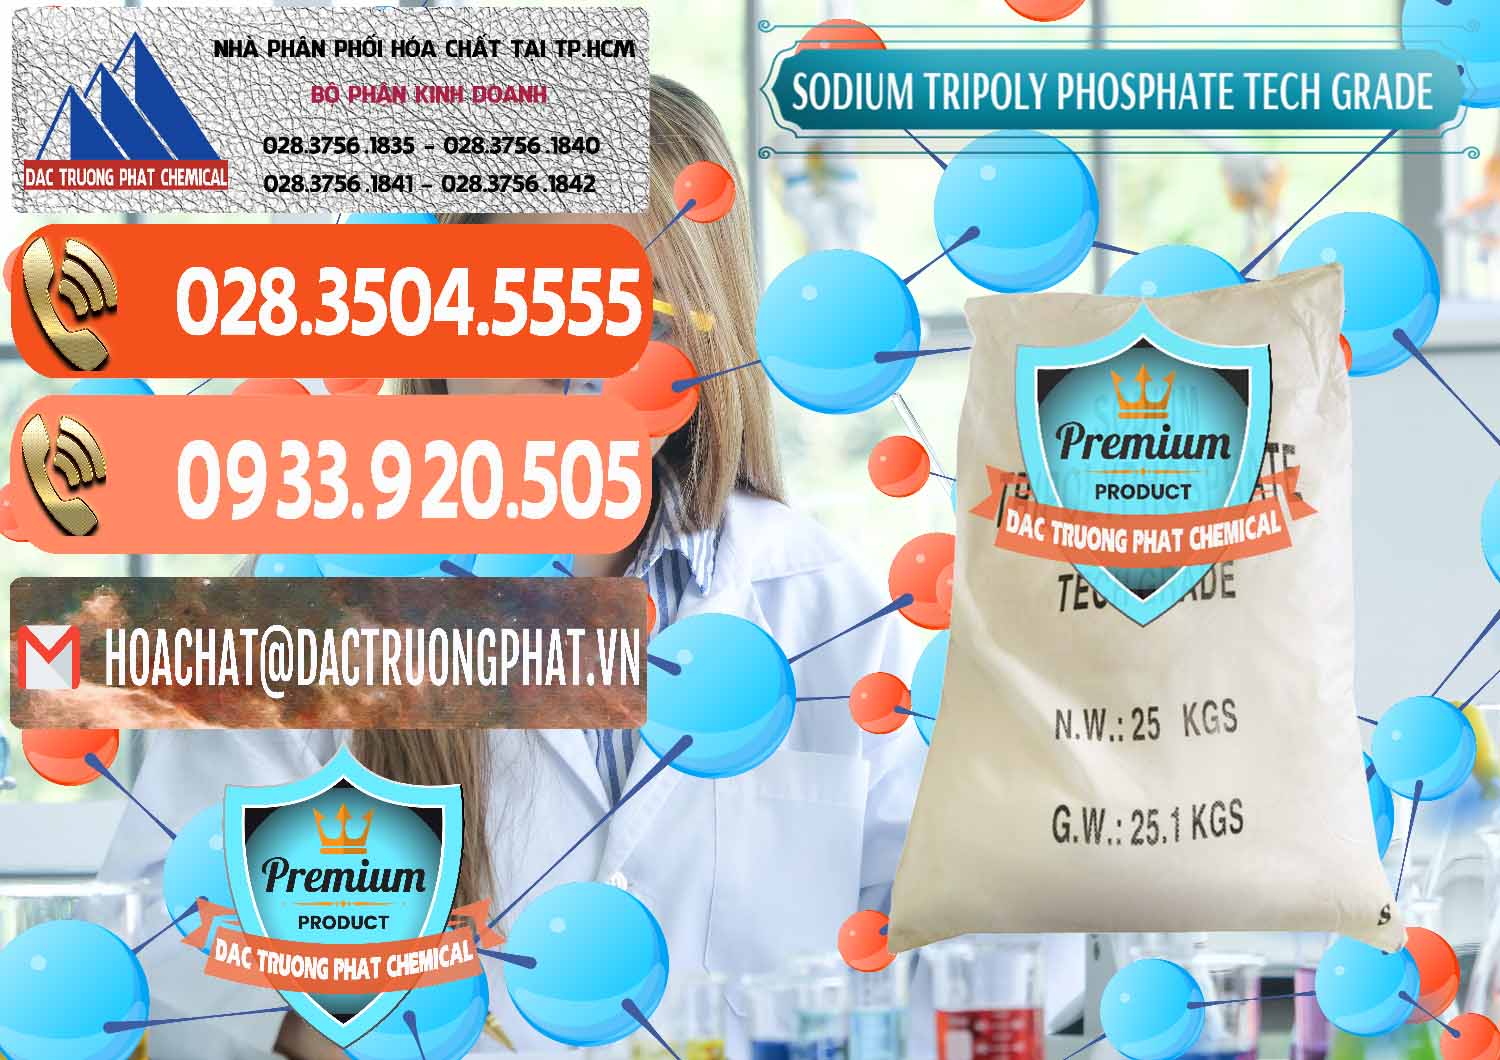 Cty kinh doanh ( bán ) Sodium Tripoly Phosphate - STPP Tech Grade Trung Quốc China - 0453 - Nơi phân phối - bán hóa chất tại TP.HCM - hoachatmientay.com